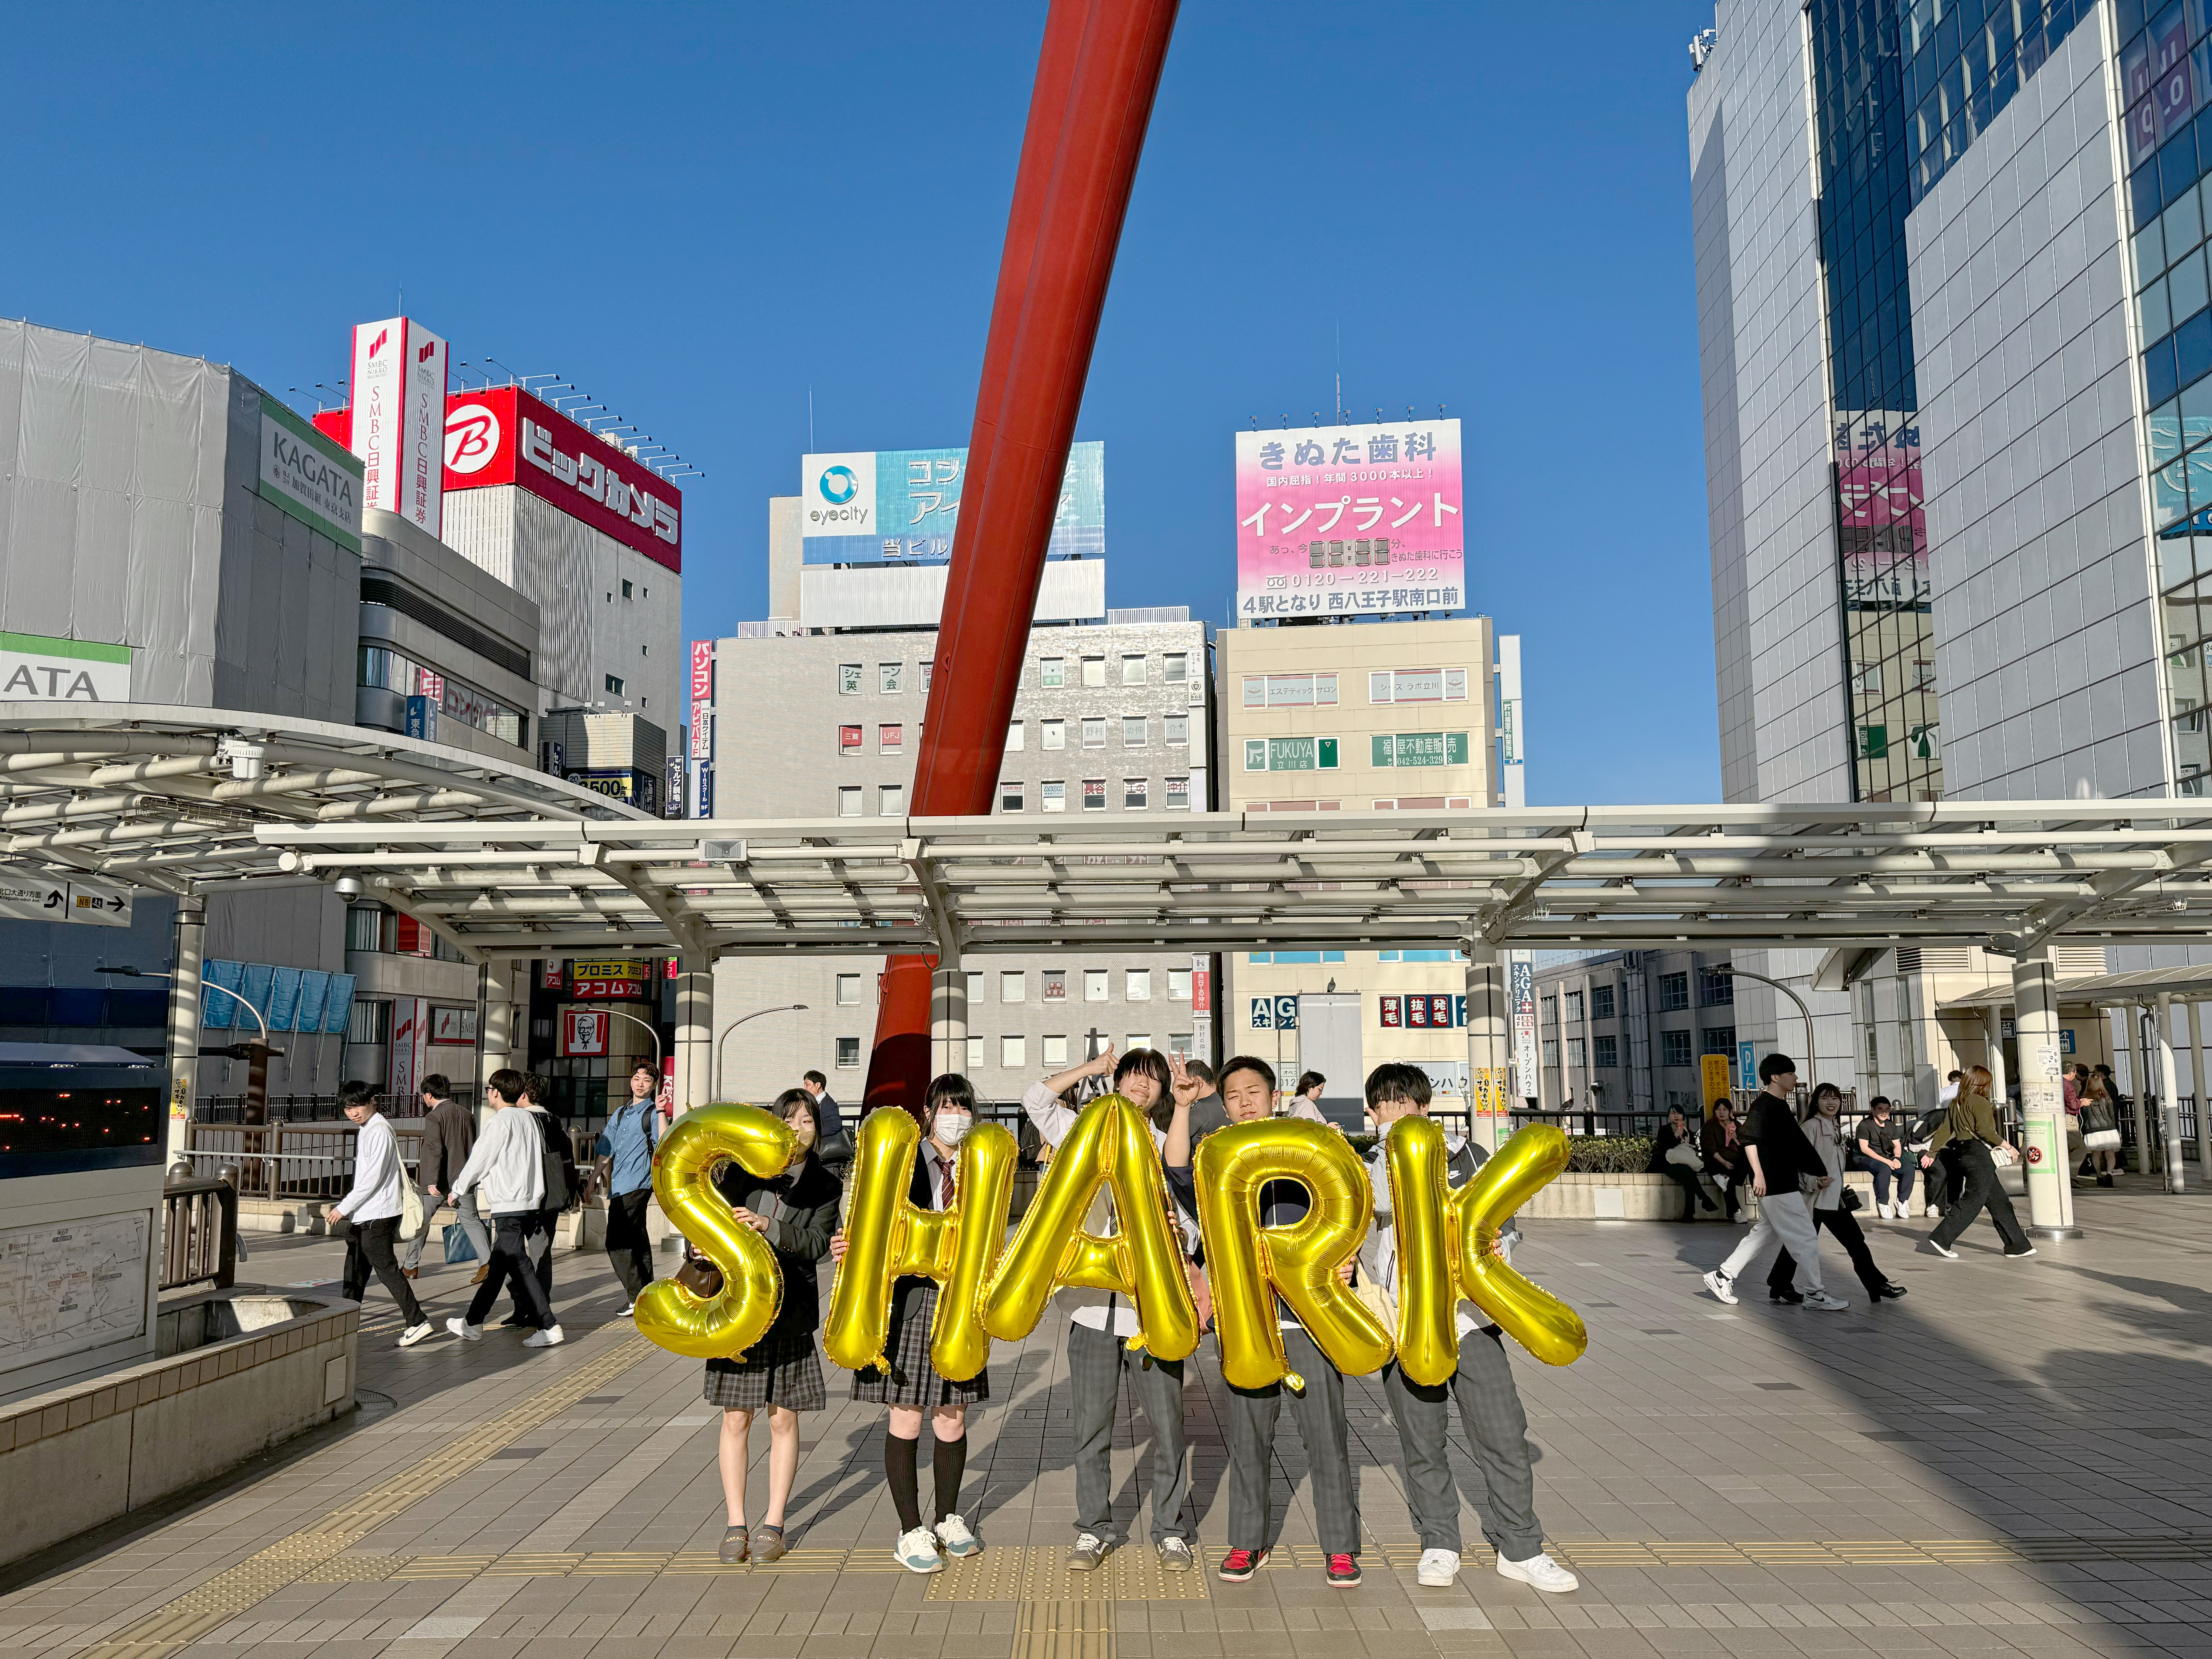 Japan, Tachikawa, Tachikawa Station (立川駅) - Shark, Silence Was Golden, gold balloons